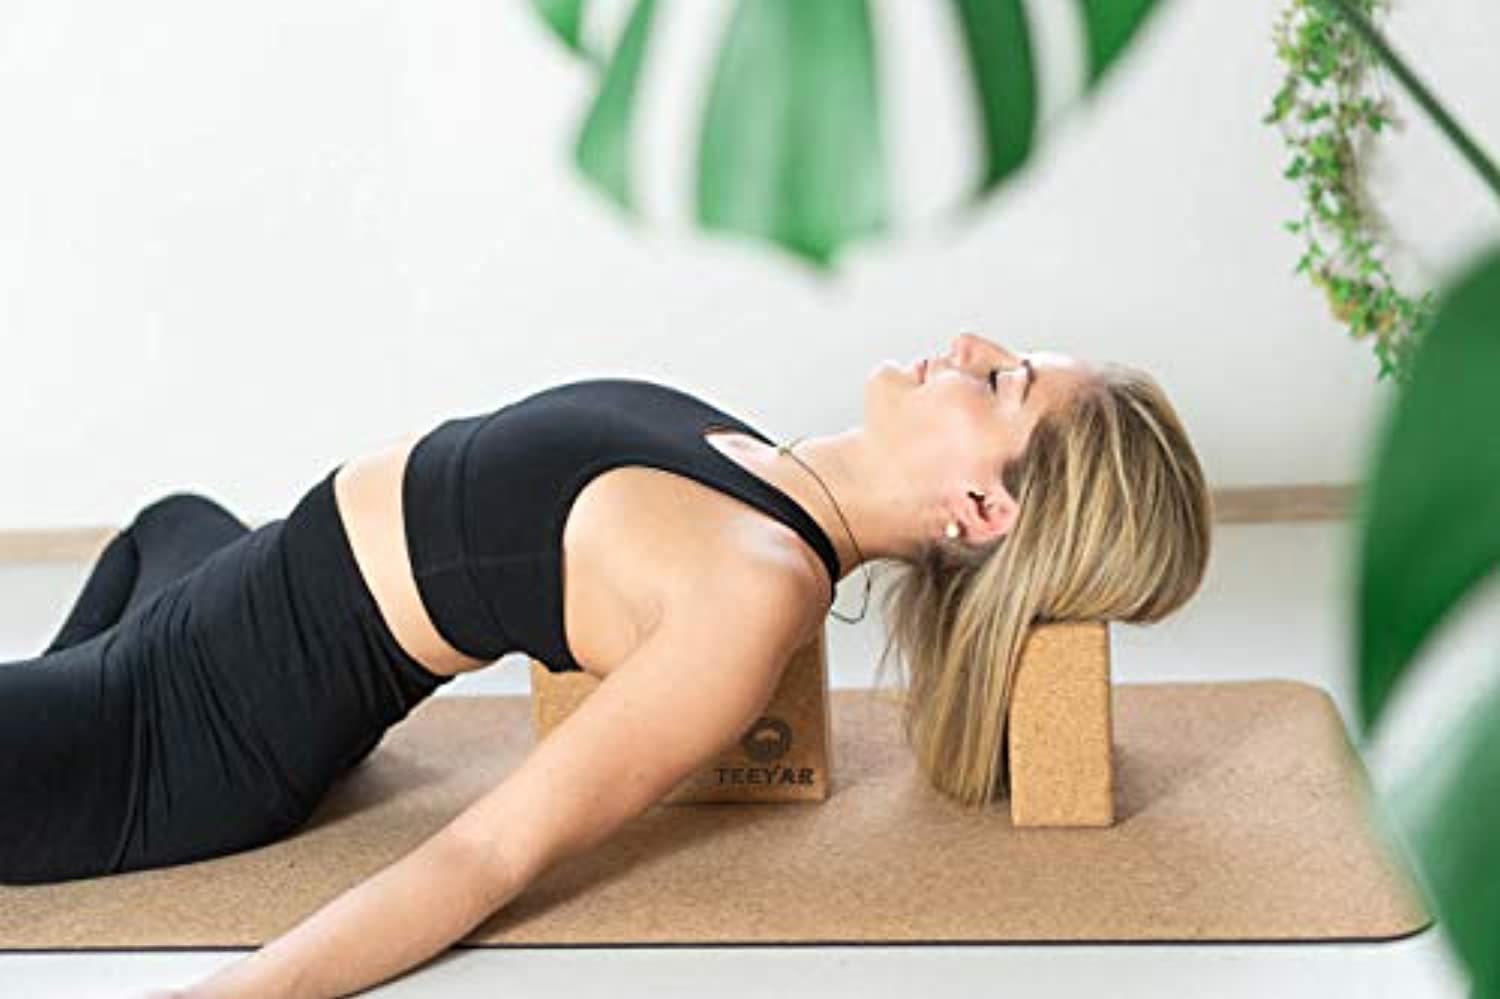 Bloque yoga corcho para ejercicios, pilates, fitness 75x120x227mm - Mat yoga  corcho & bloque yoga corcho - ¡Expertos en productos de corcho!